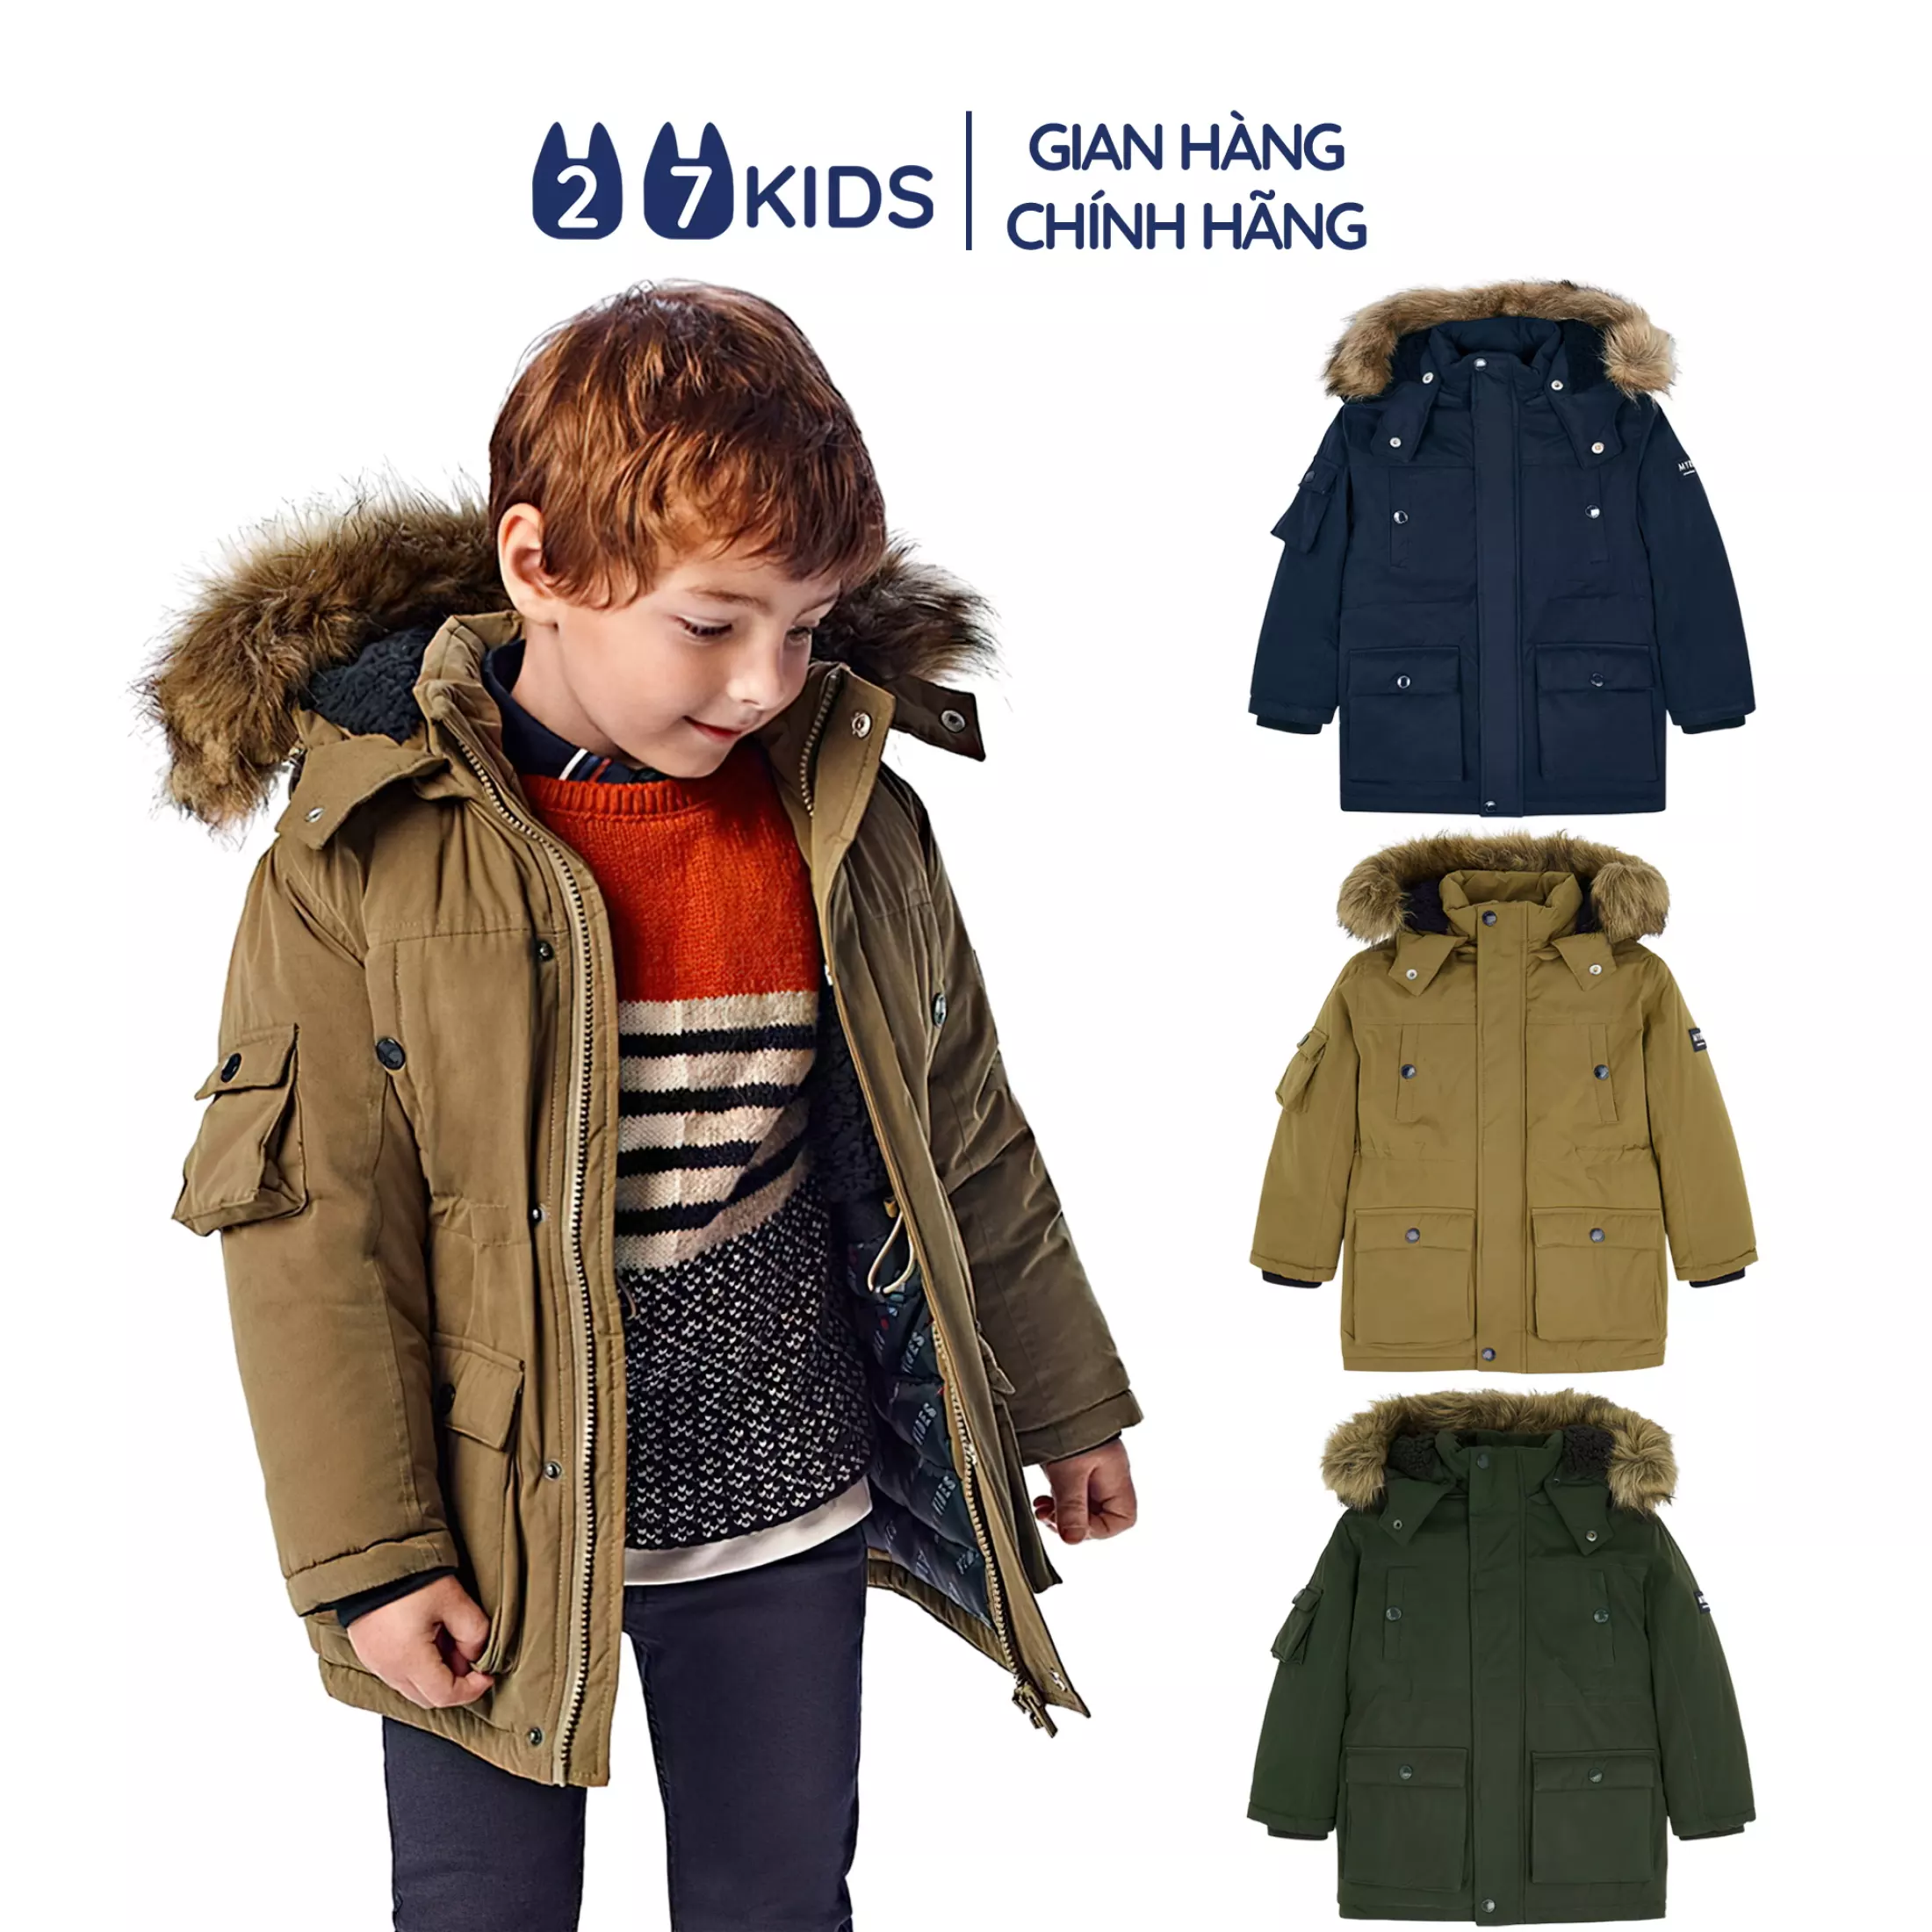 Áo khoác parka bé trai 27kids áo ấm mùa đông nam cho trẻ 2-9 tuổi BLCO4